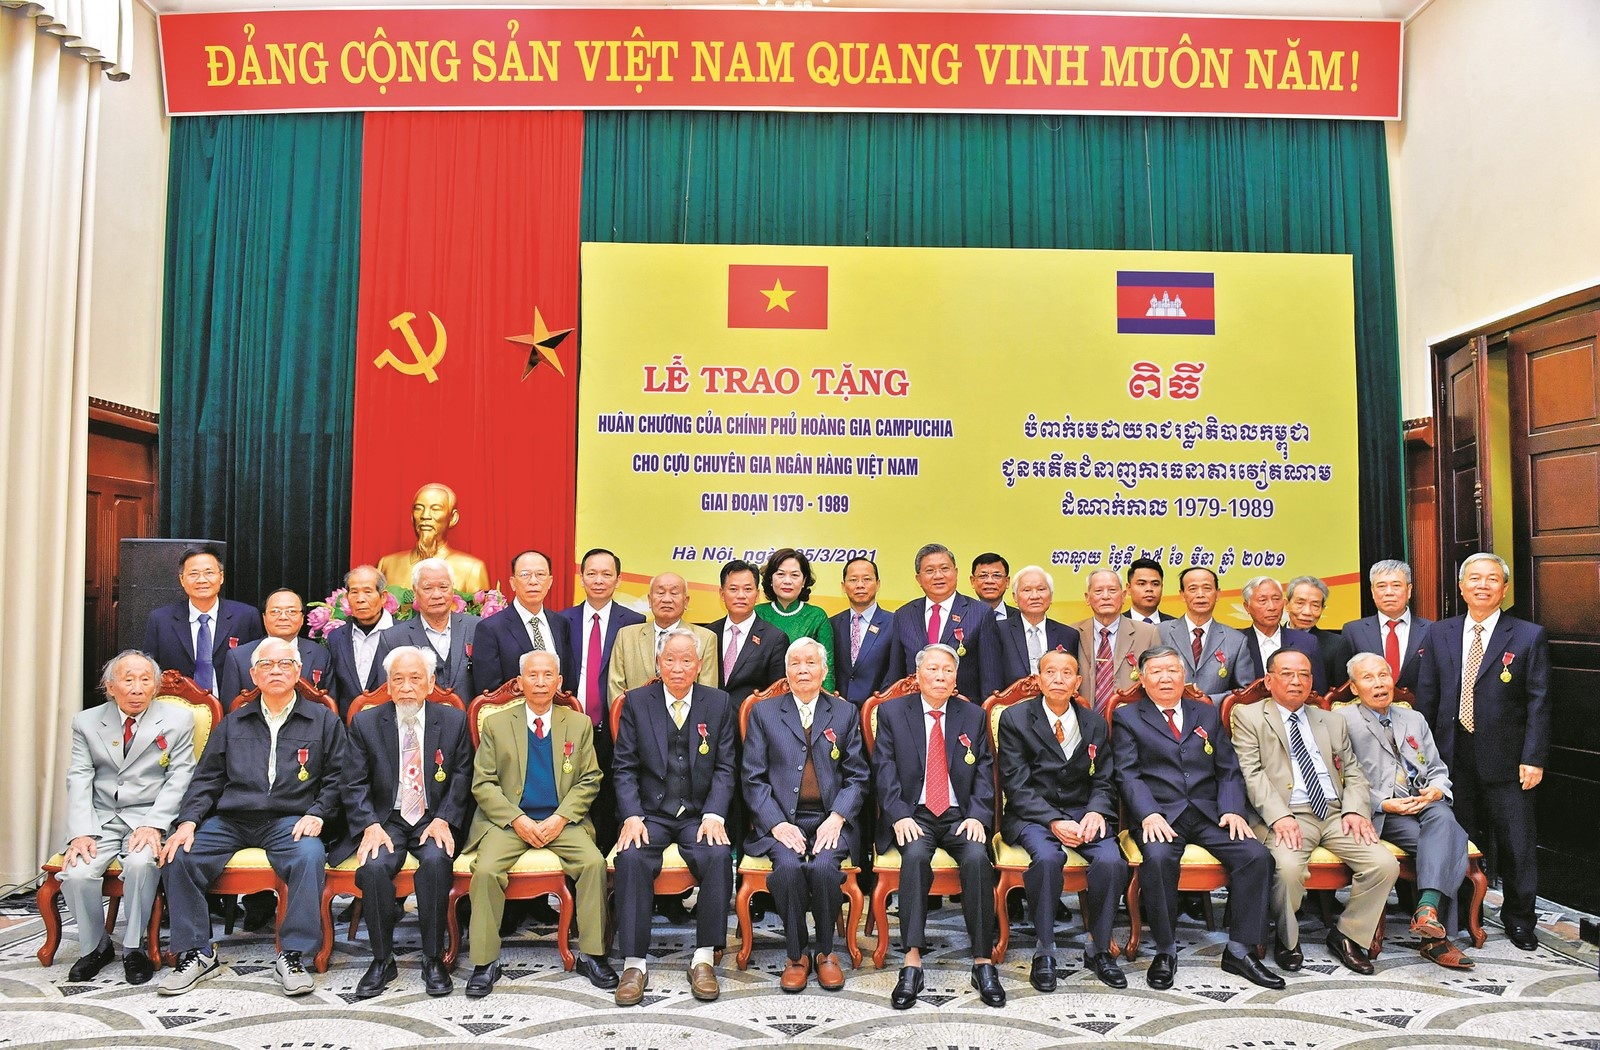 Cán bộ ngân hàng Ban K: Tô thắm thêm tình hữu nghị Việt Nam - Campuchia